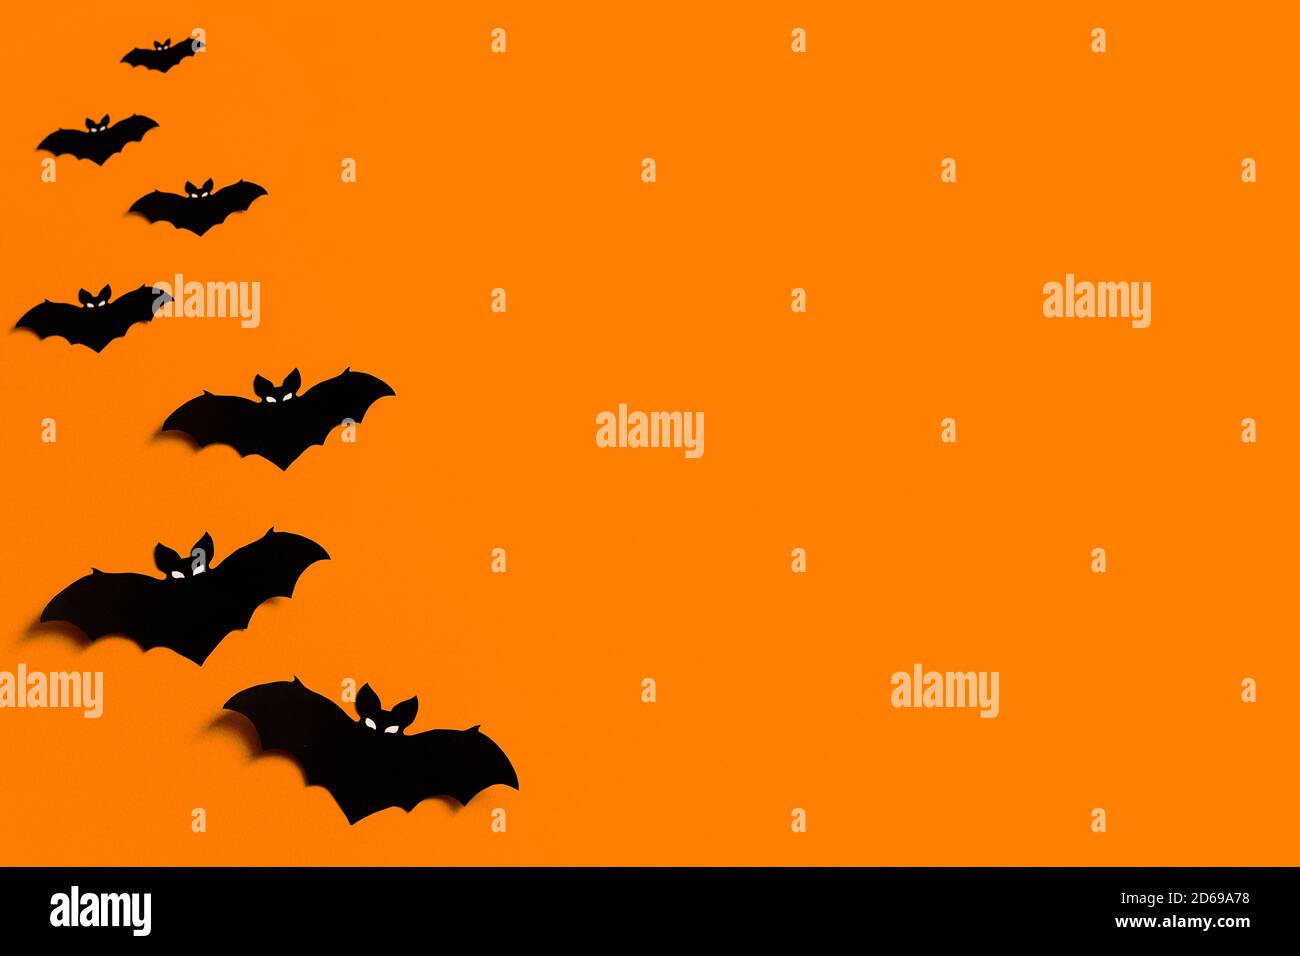 Sfondo arancione con un gregge di pipistrelli di carta nera per Halloween, silhouette di pipistrelli di carta nera su sfondo arancione, concetto di Halloween, copyspace Foto Stock